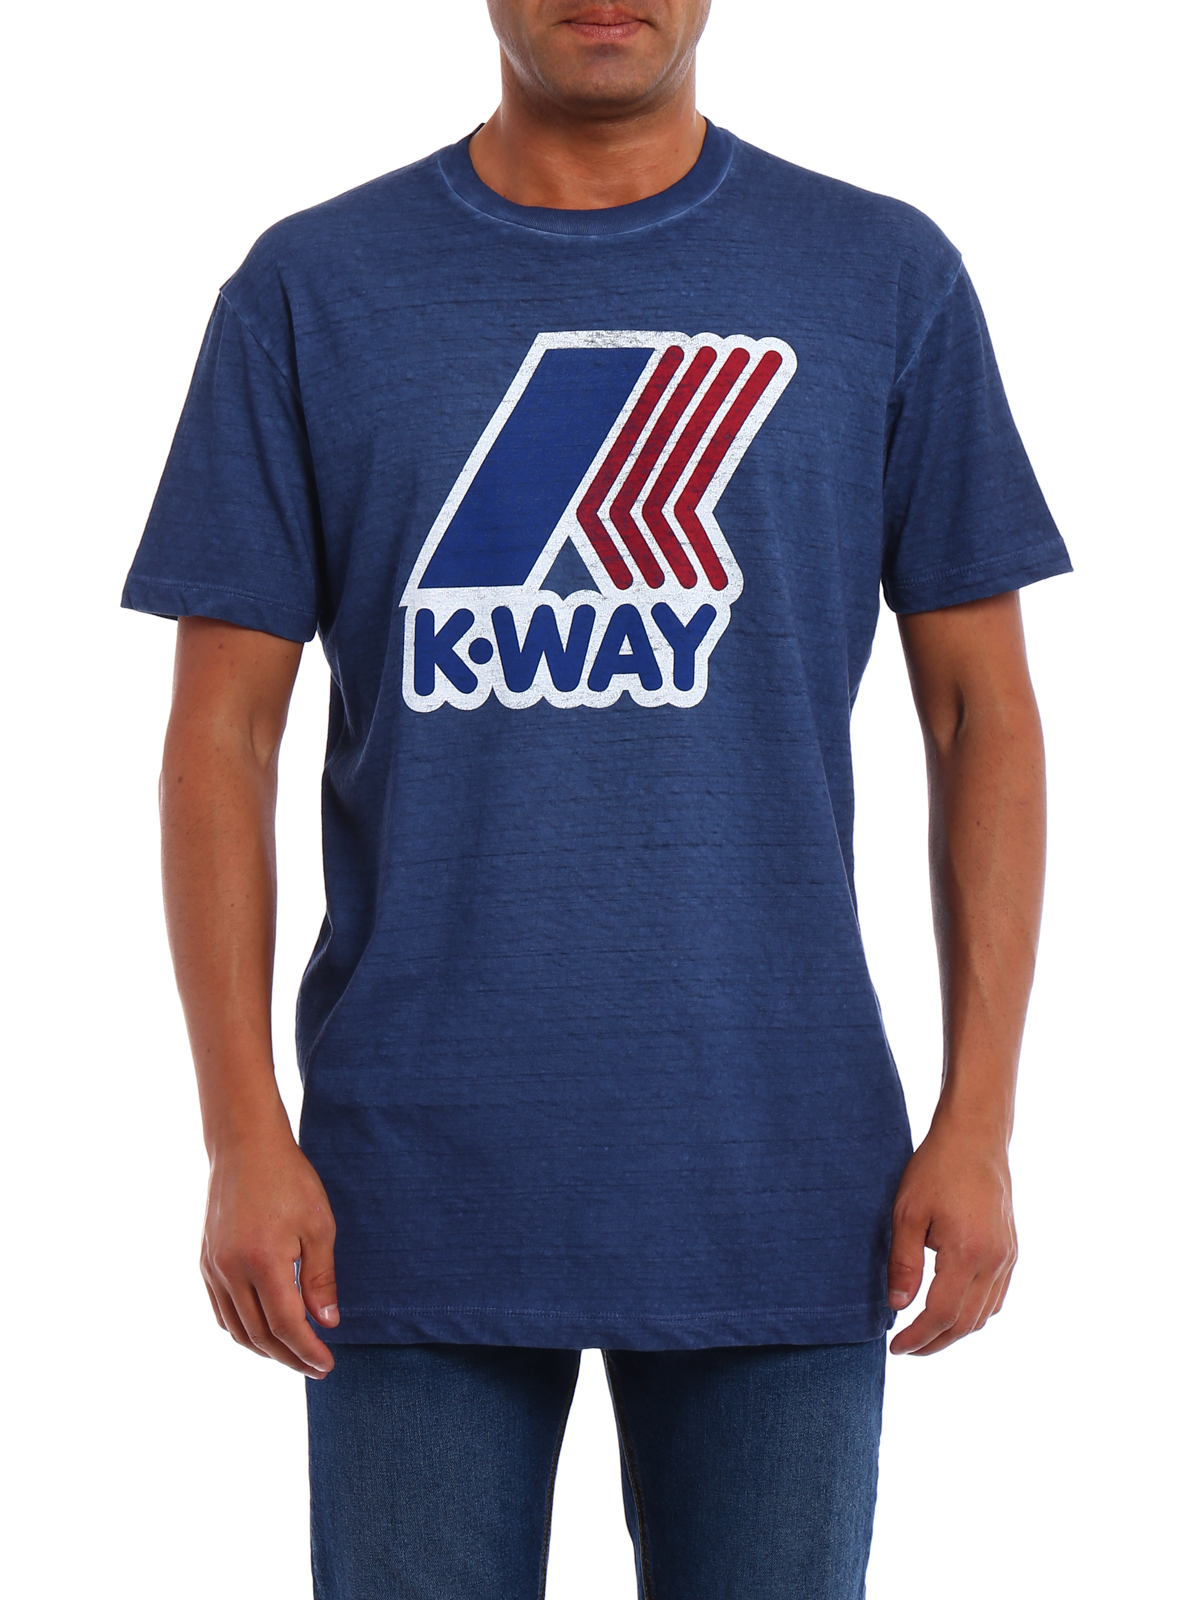 Футболка Kussia. K-way бренд чей. Judo t Shirt.